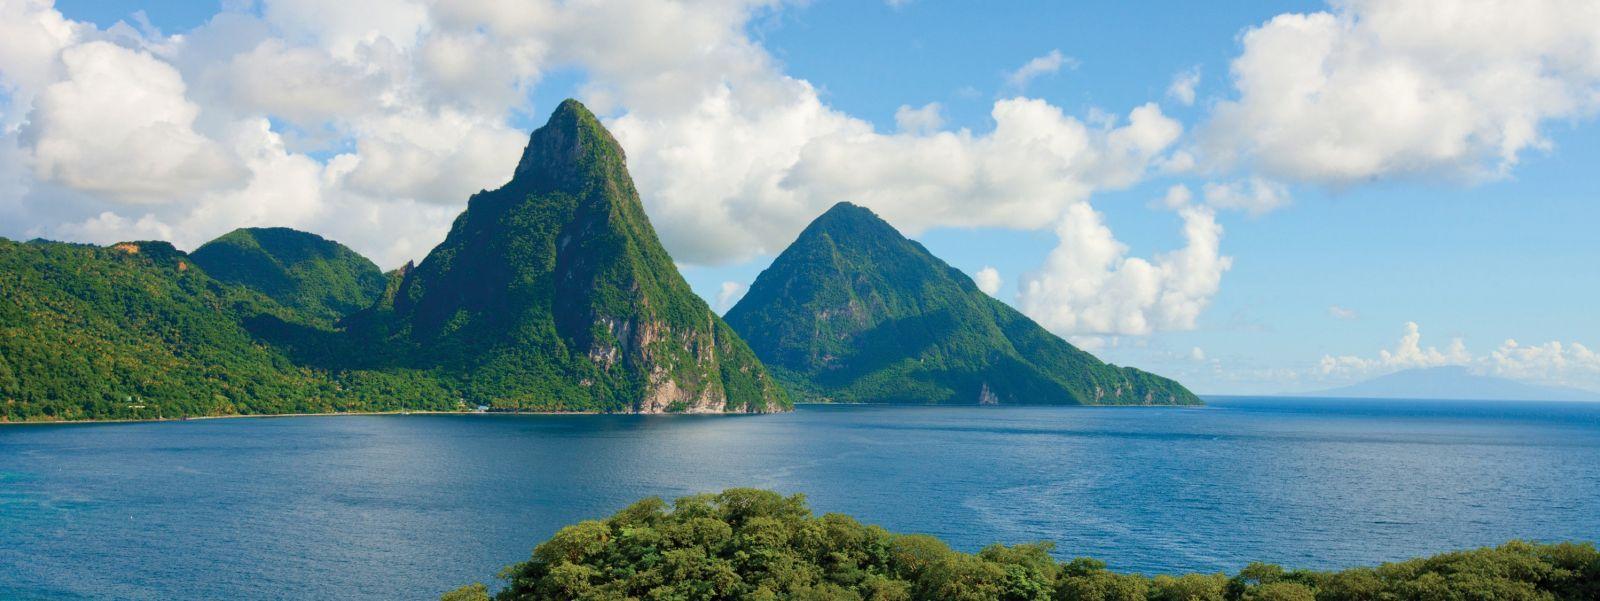 Destination Saint Lucia Product Guide – Saint Lucia Tourism News